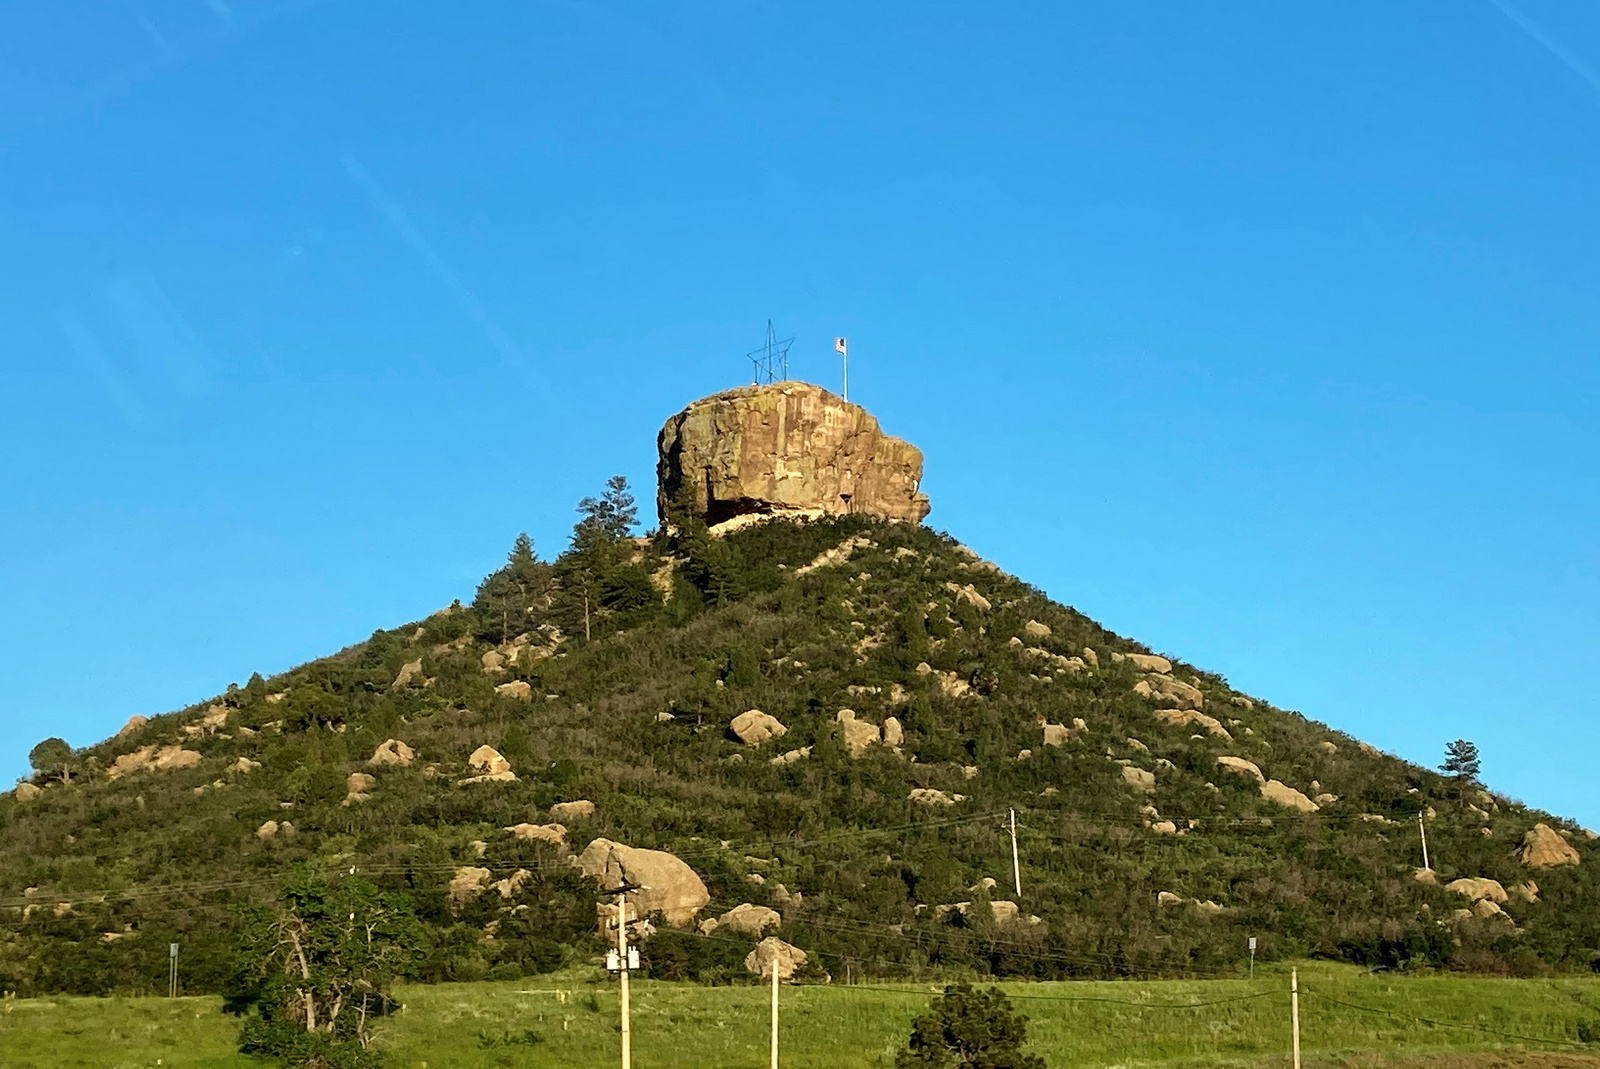 The Castle Rock